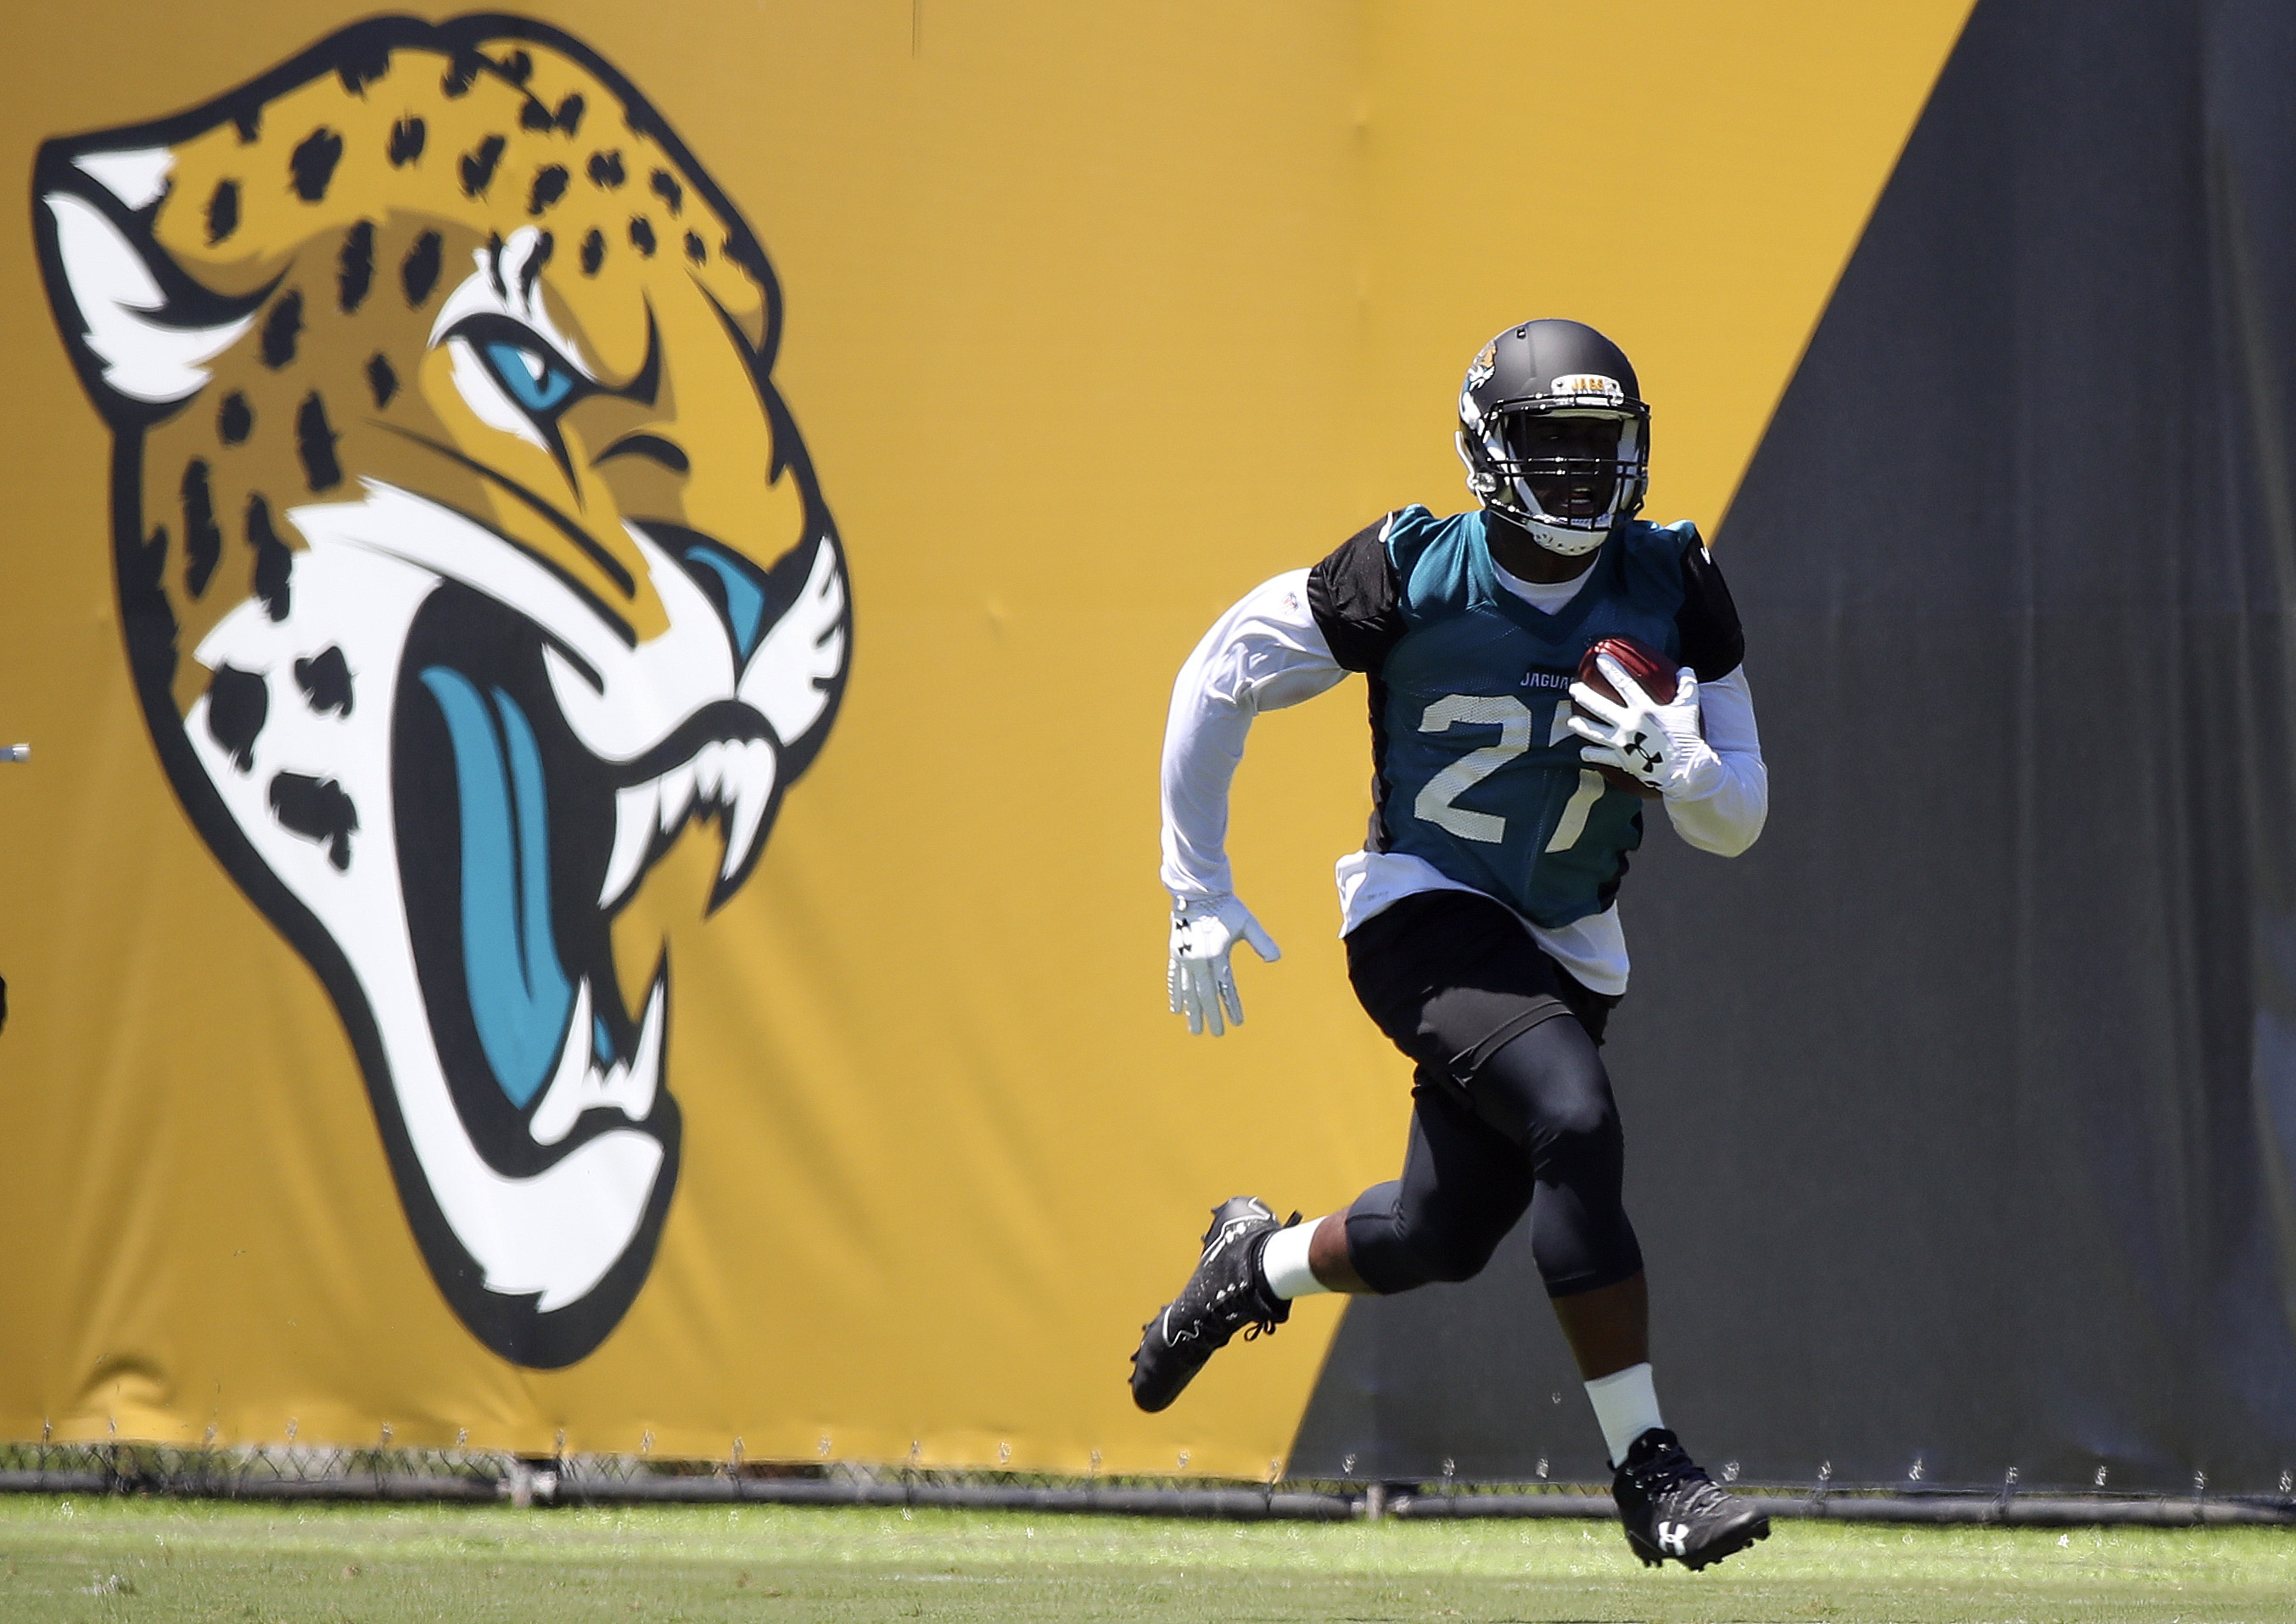 NFL: Jacksonville Jaguars-OTA